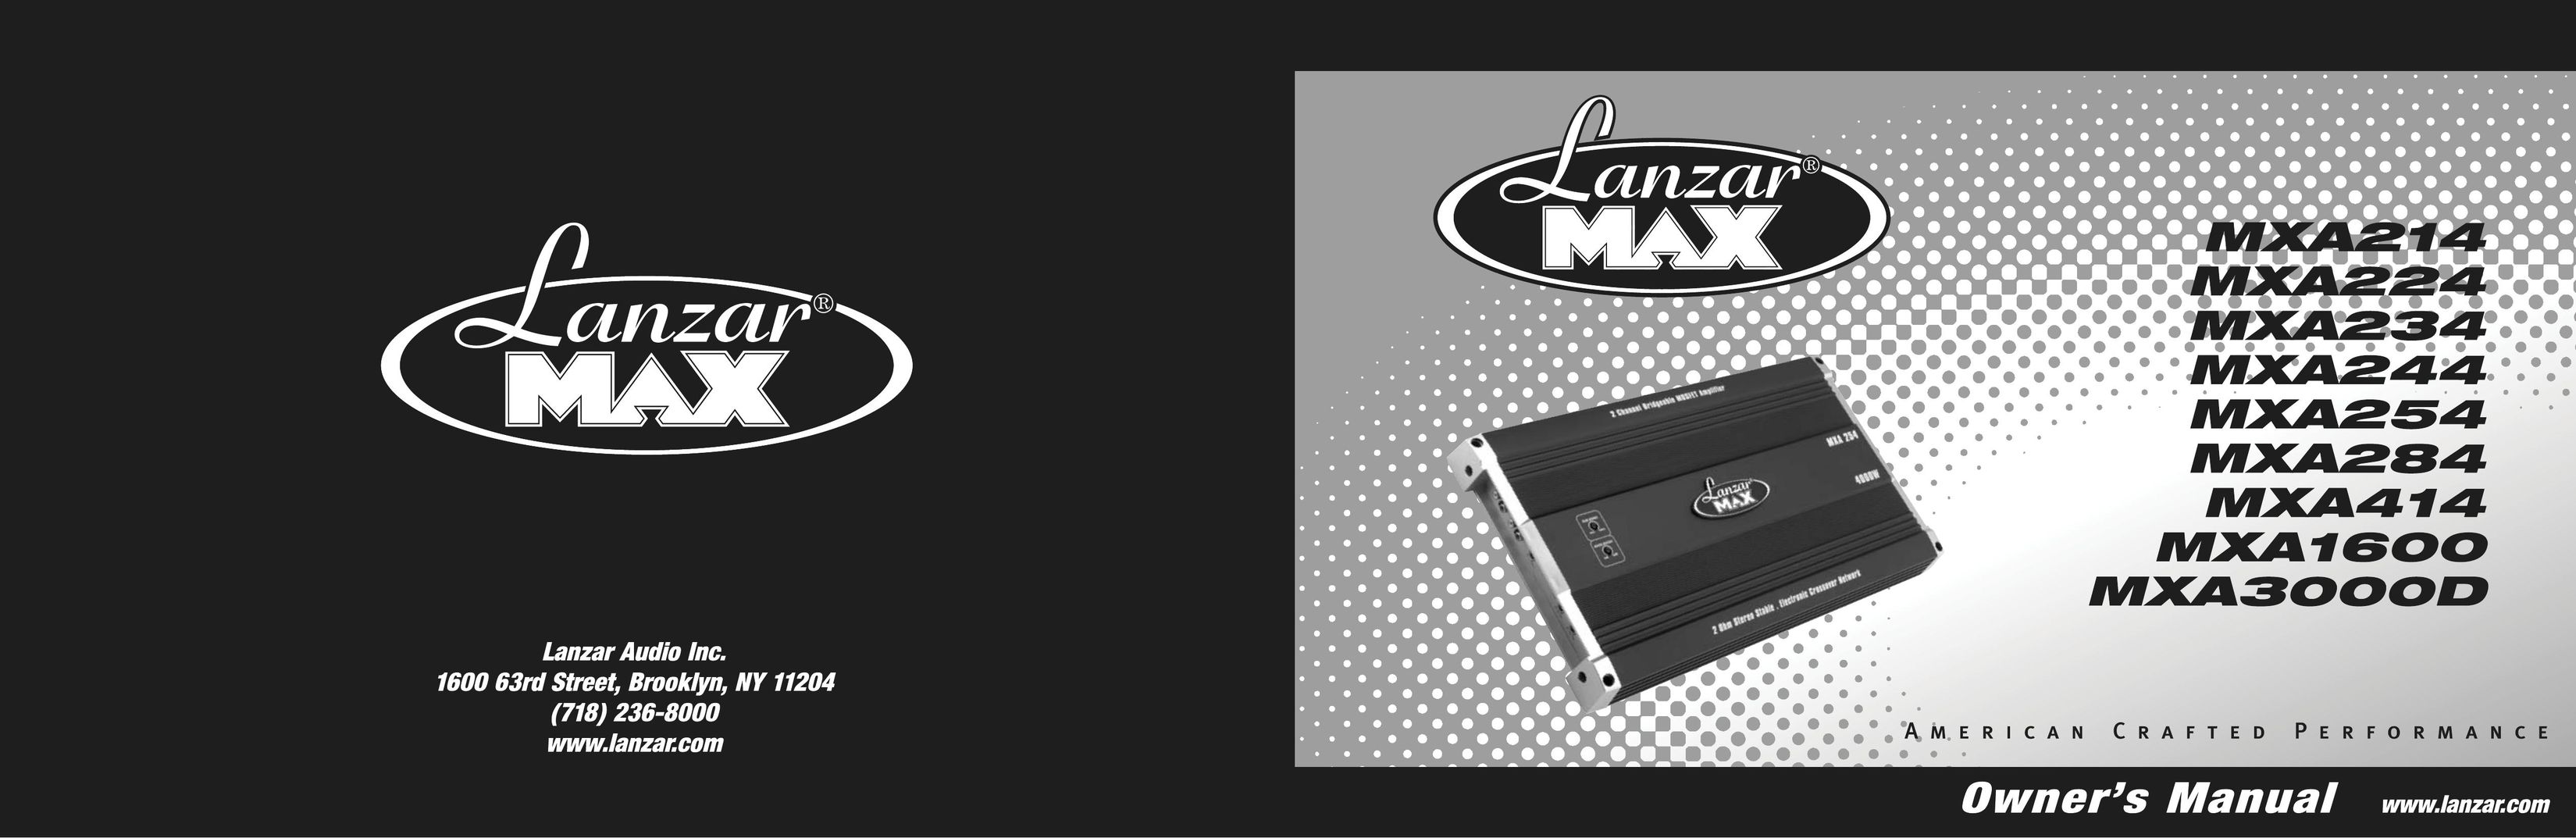 Lanzar Car Audio MXA214 Car Amplifier User Manual